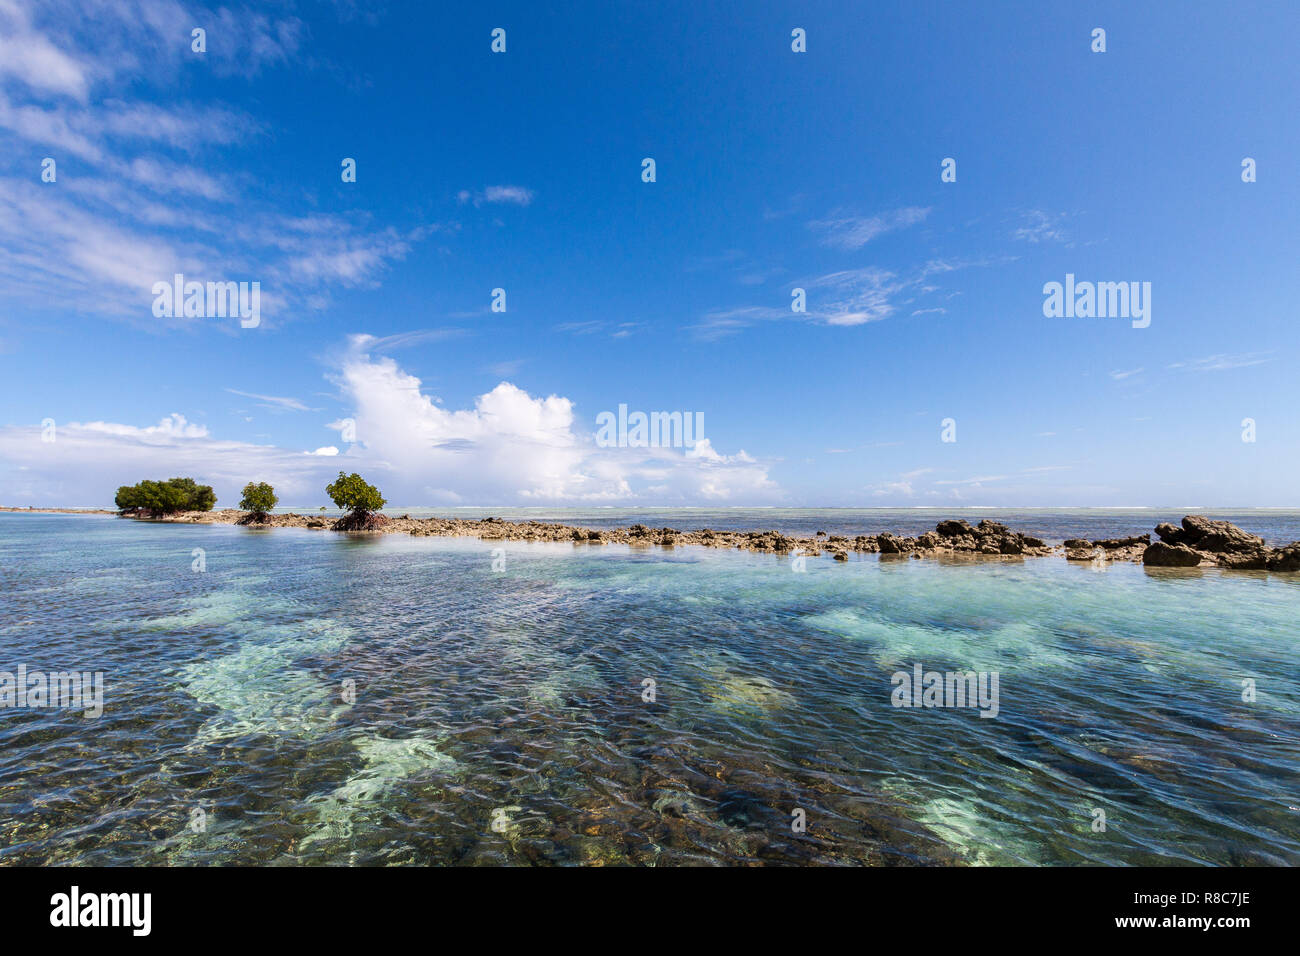 Azur lagon bleu turquoise avec les coraux, une petite île inhabitée de corail pleine de rochers dangereux et les mangroves. Island​ Pohnpei, Micronésie, l'Océanie. Banque D'Images